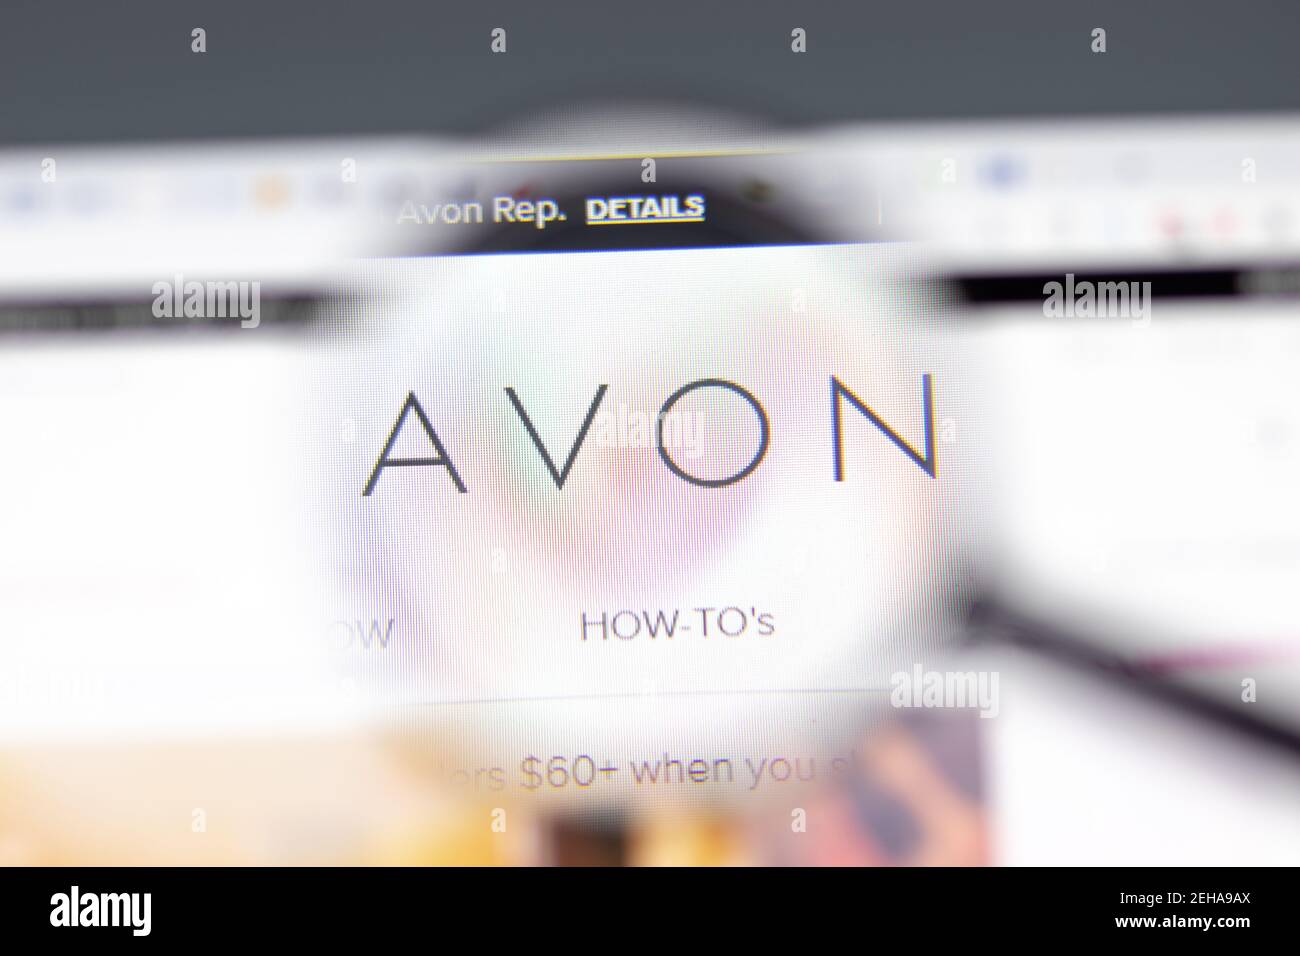 Nueva York, EE.UU. - 15 de febrero de 2021: Avon sitio web en el navegador con el logotipo de la empresa, editorial ilustrativa Foto de stock